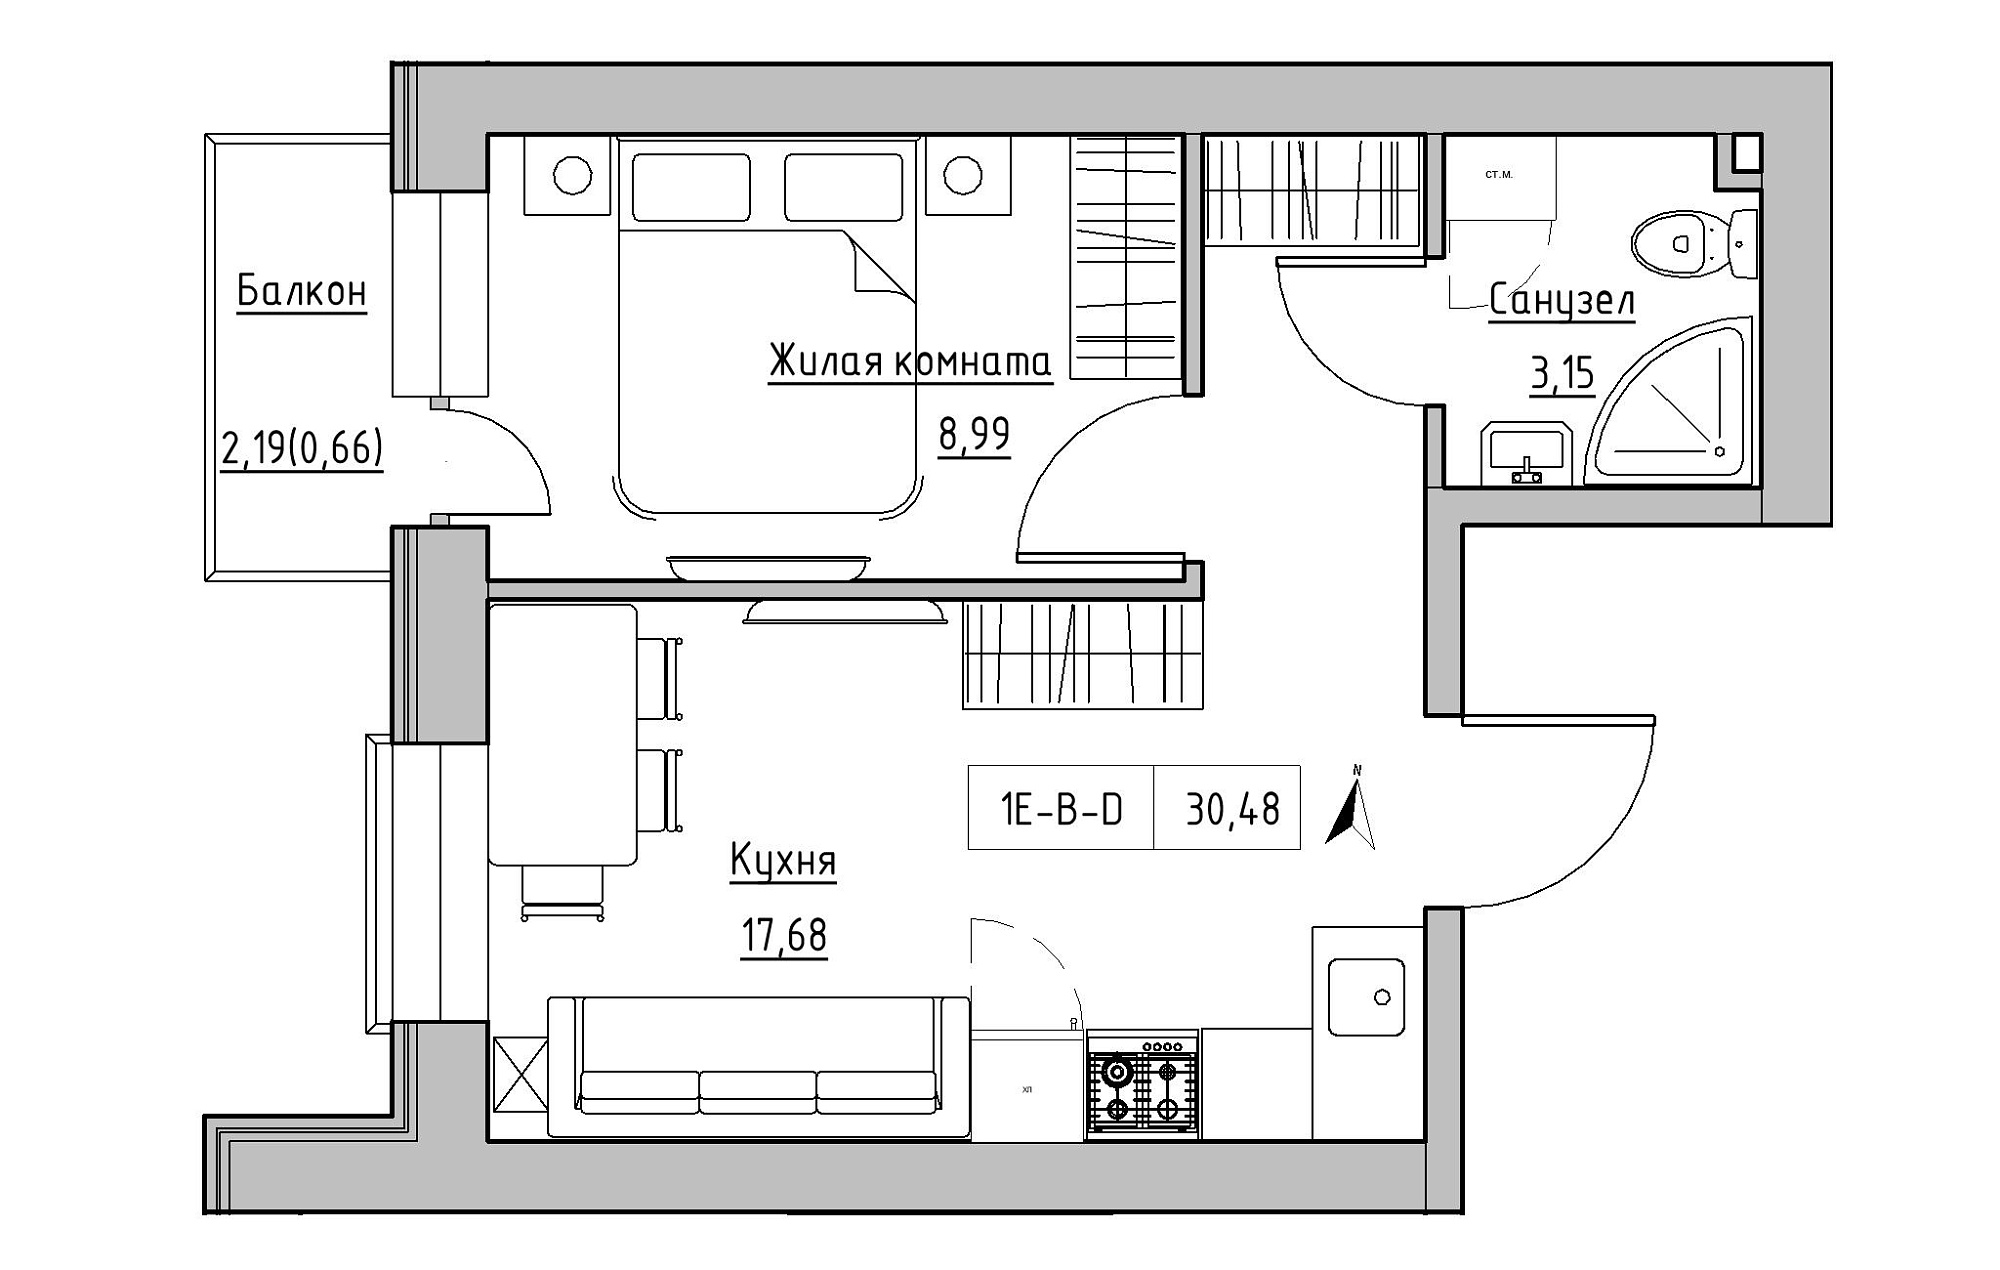 Планировка 1-к квартира площей 30.48м2, KS-019-04/0003.